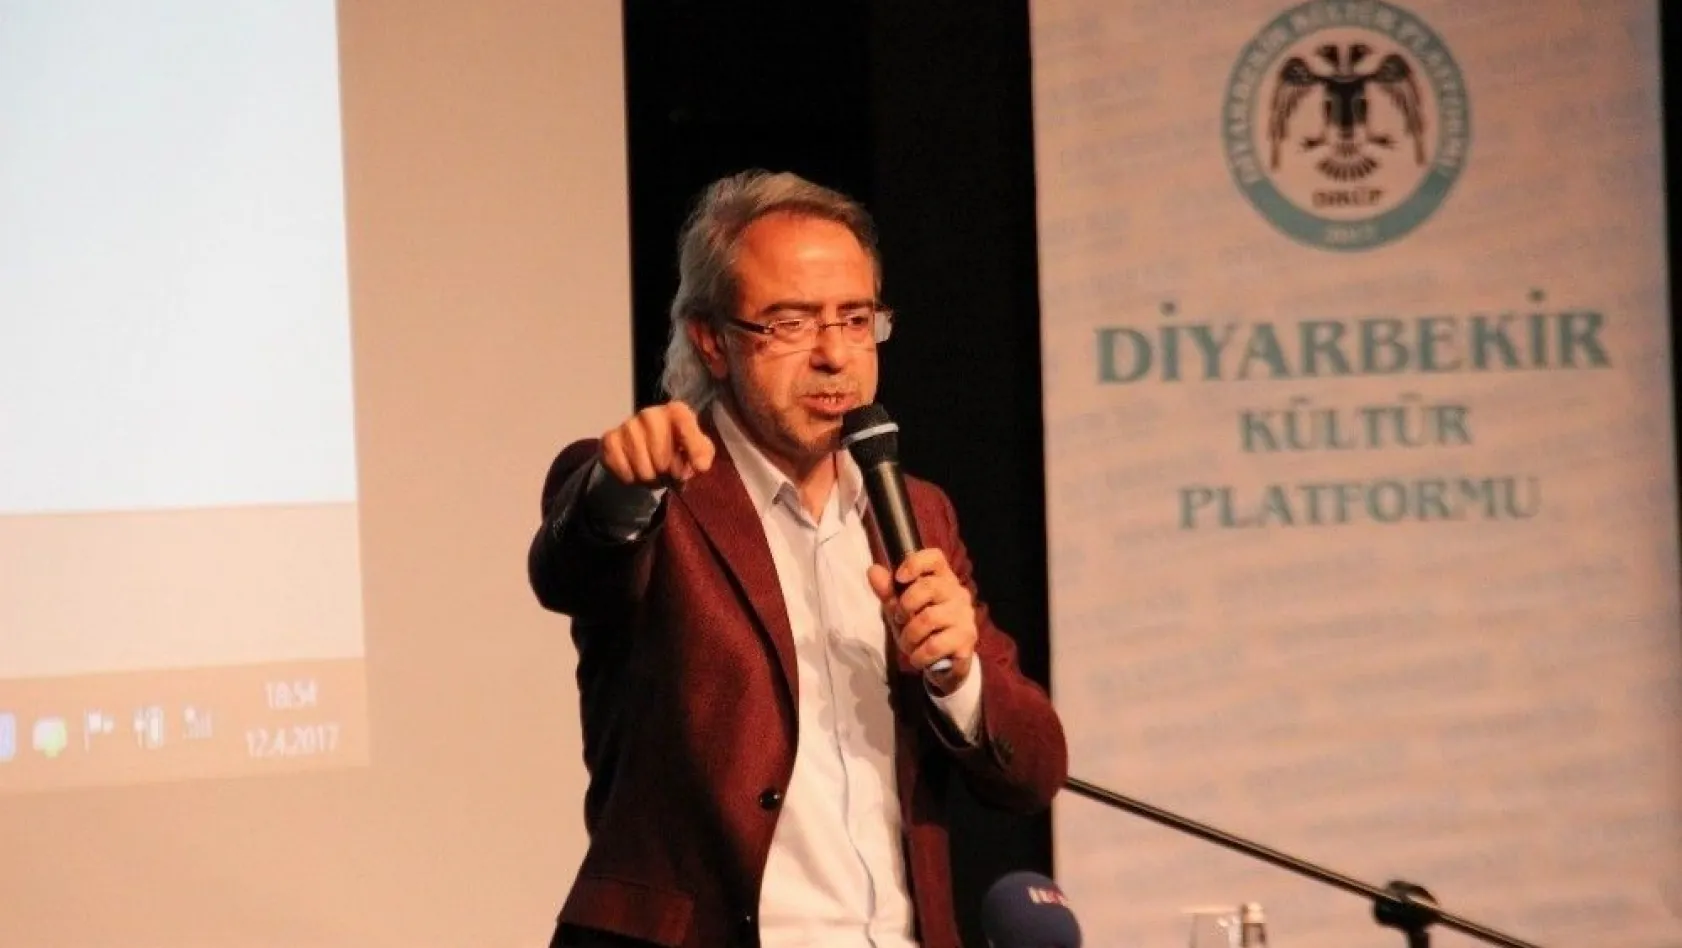 Diyarbakır neden Türkiye'nin mührüdür konferansı düzenlendi
